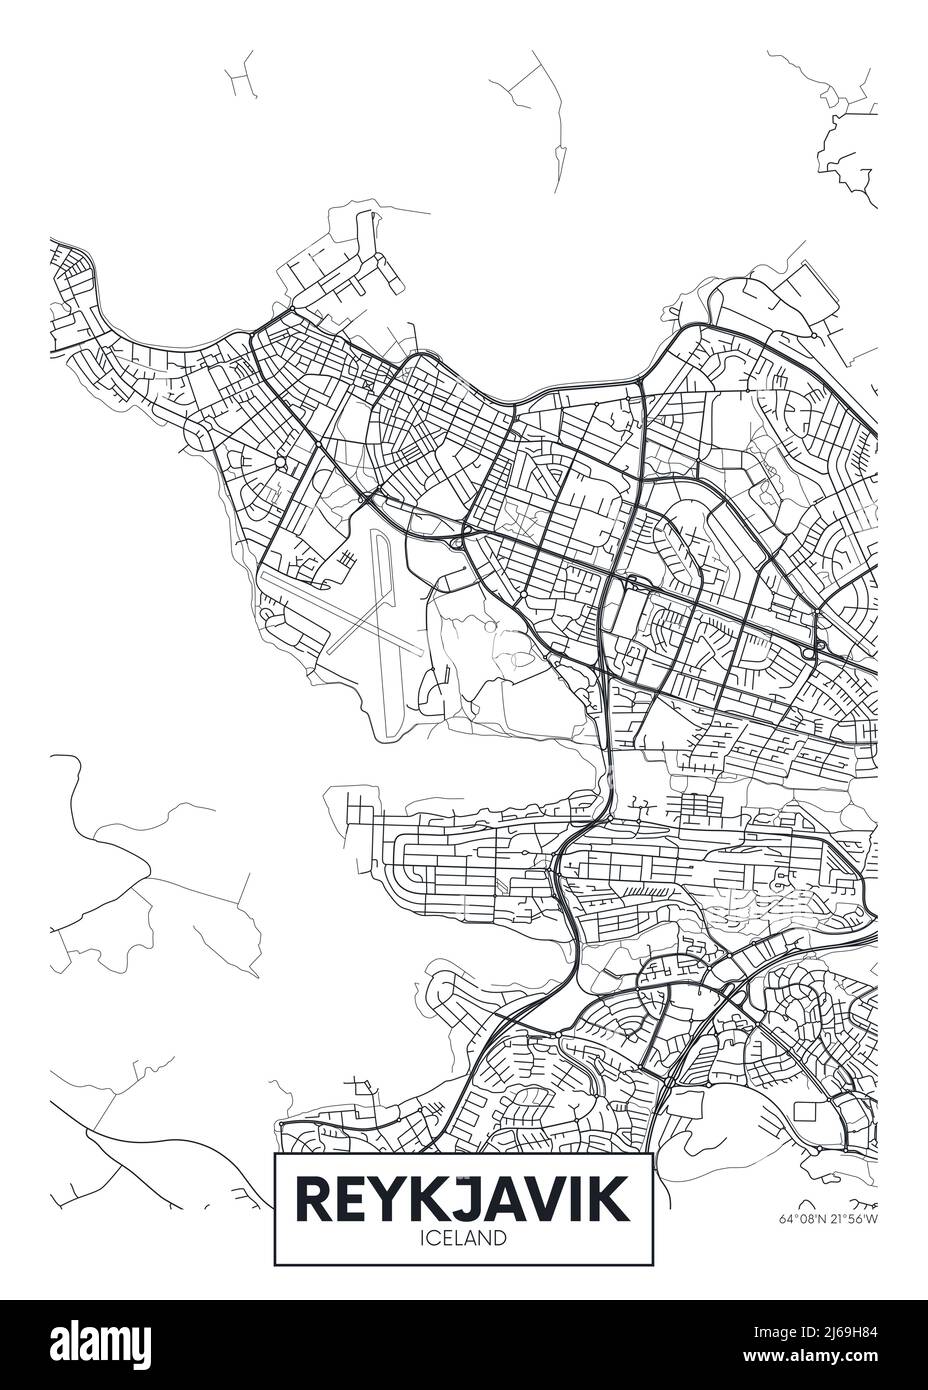 Plan de la ville Reykjavik, vecteur de voyage conception d'affiches Plan détaillé de la ville, des rivières et des rues Illustration de Vecteur